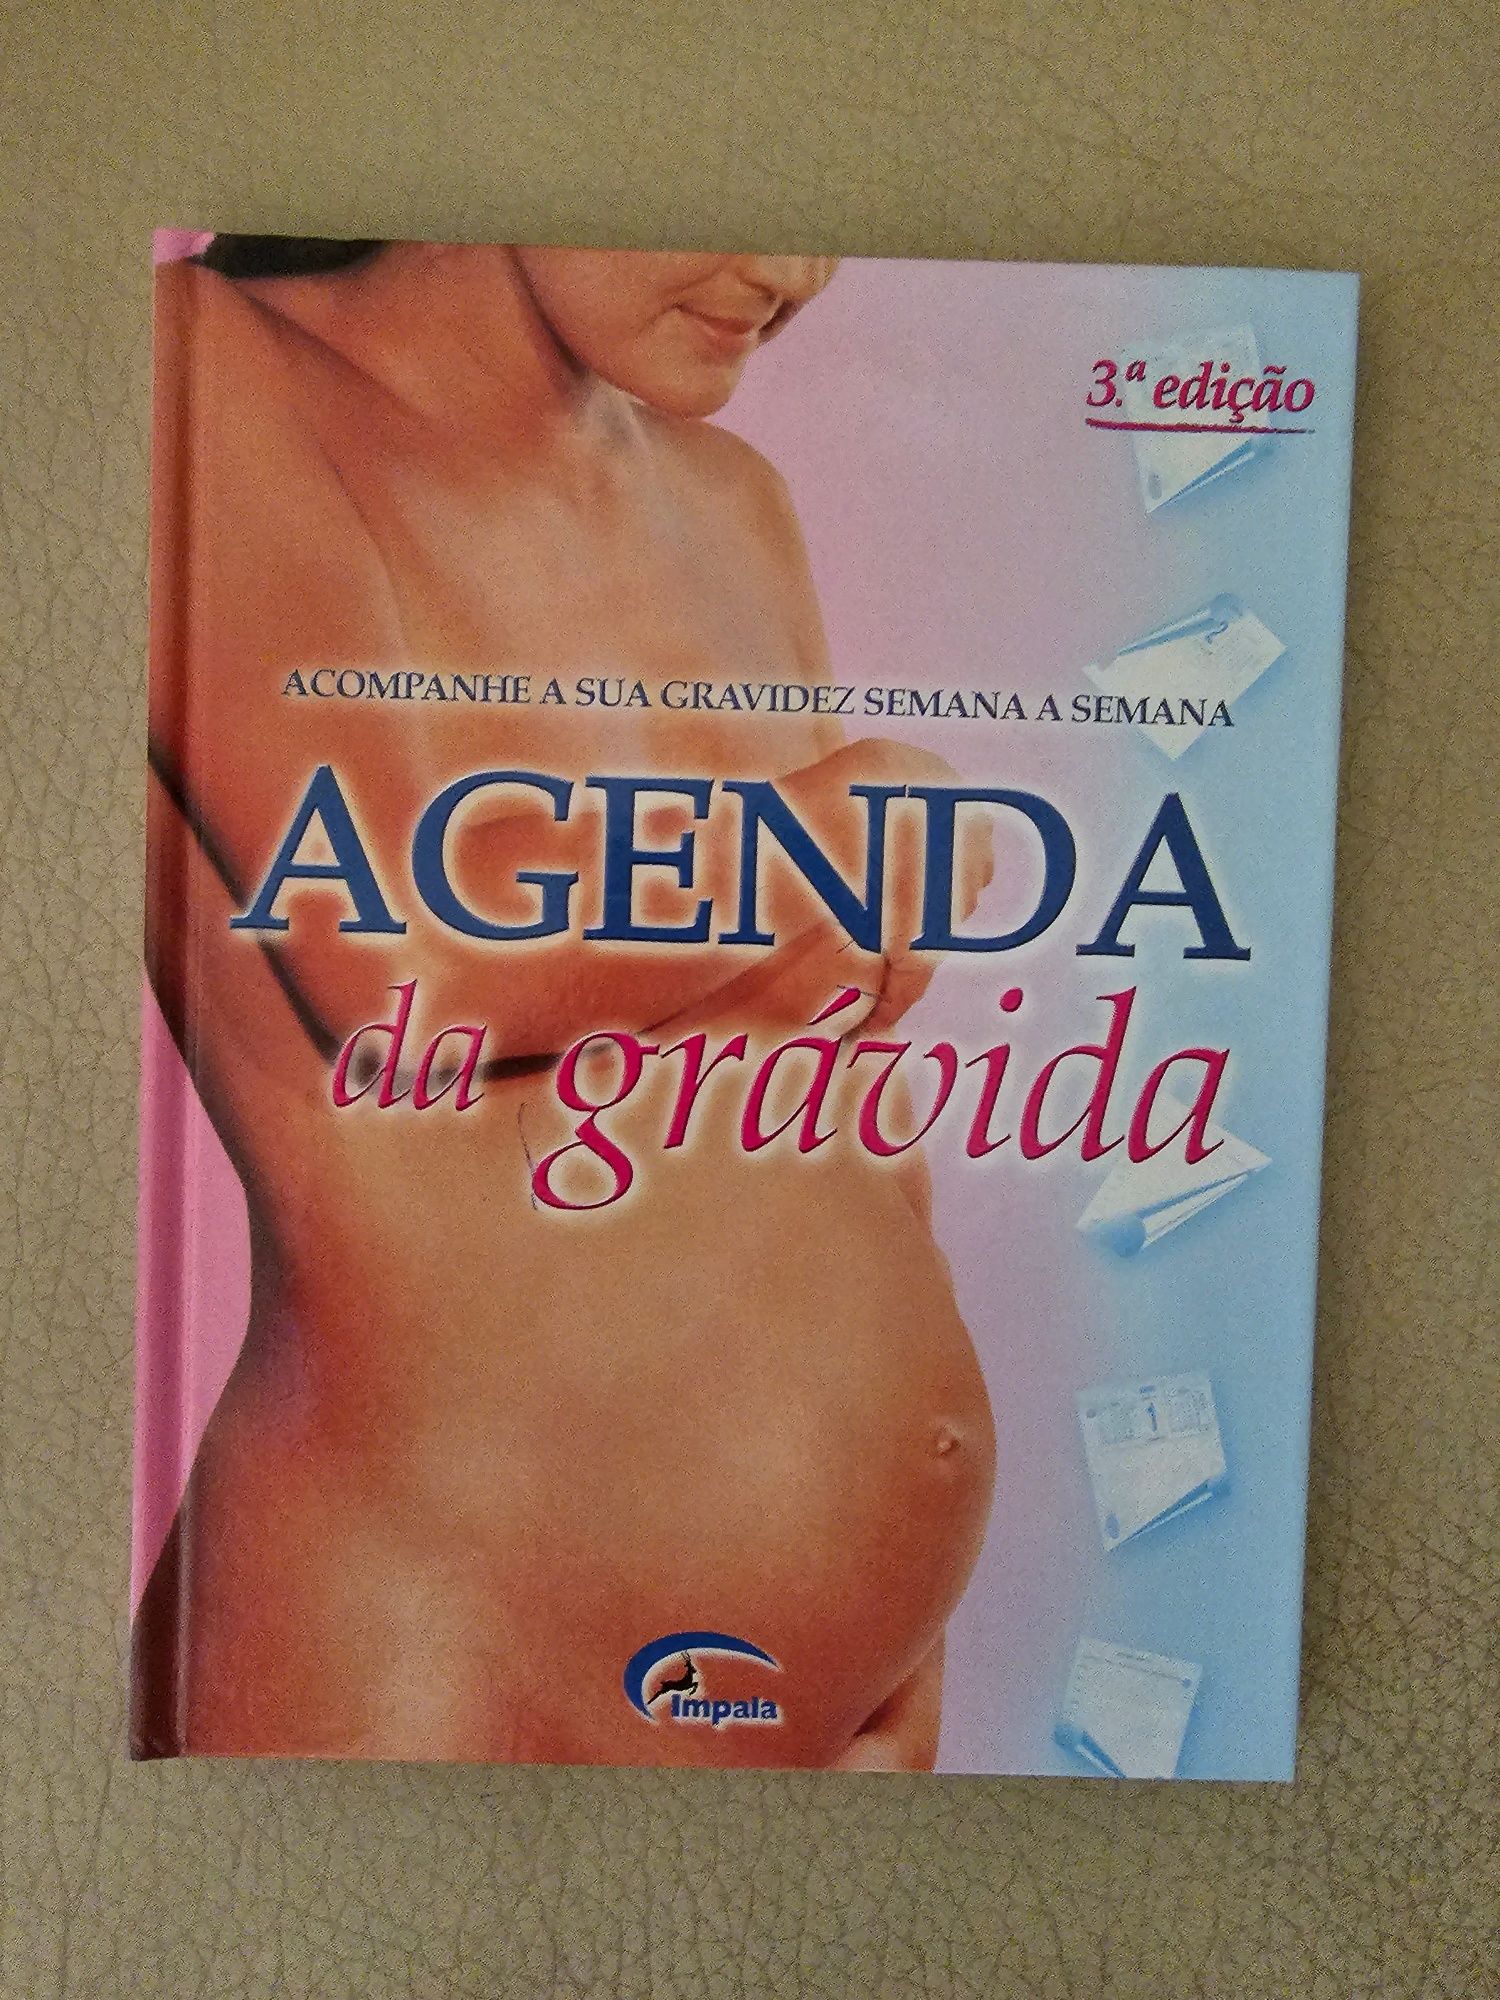 Livro "Agenda da grávida "